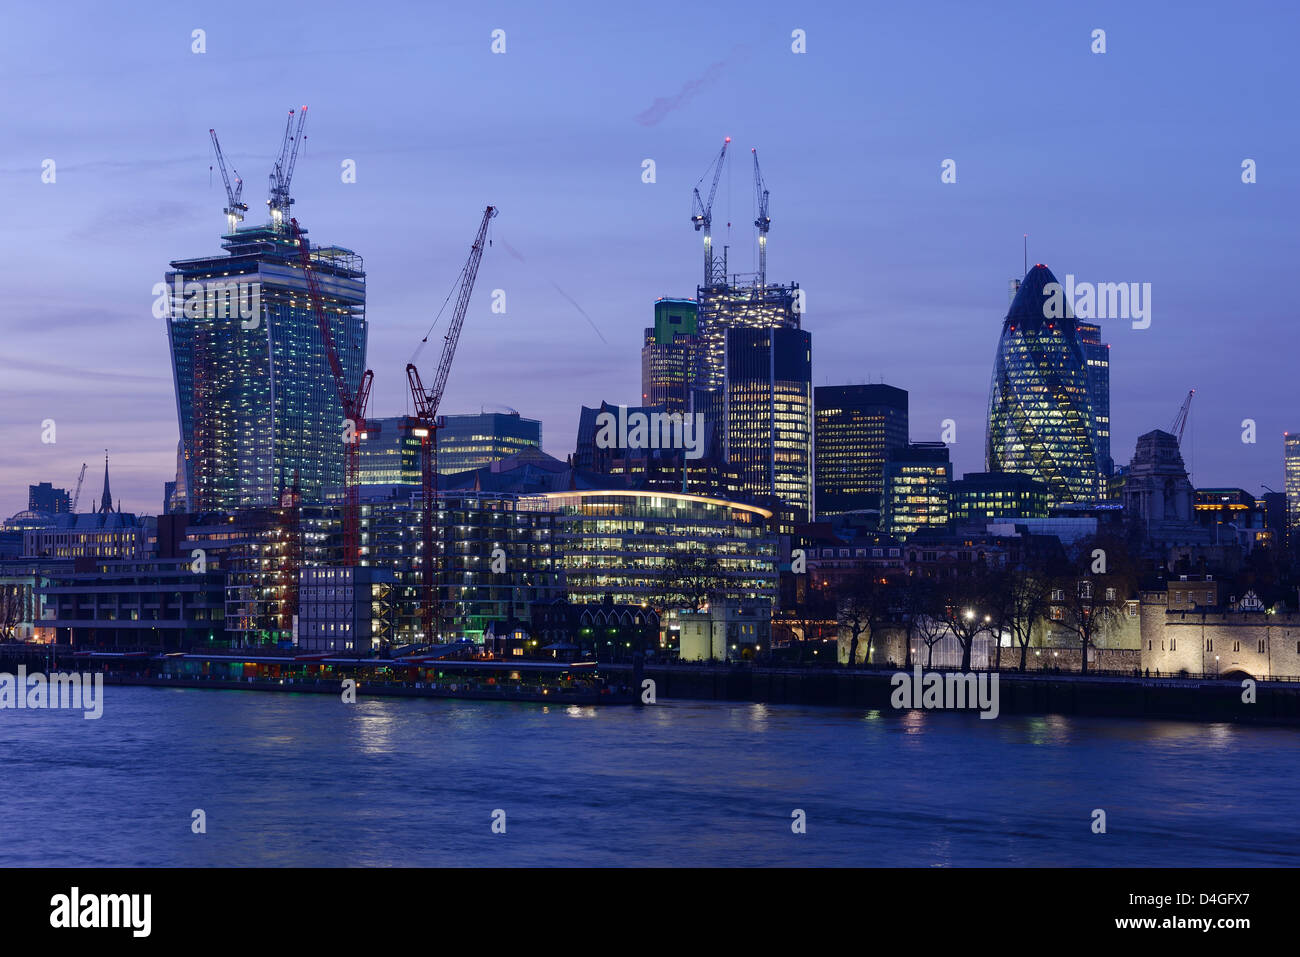 El distrito financiero de la ciudad de Londres de noche UK Foto de stock